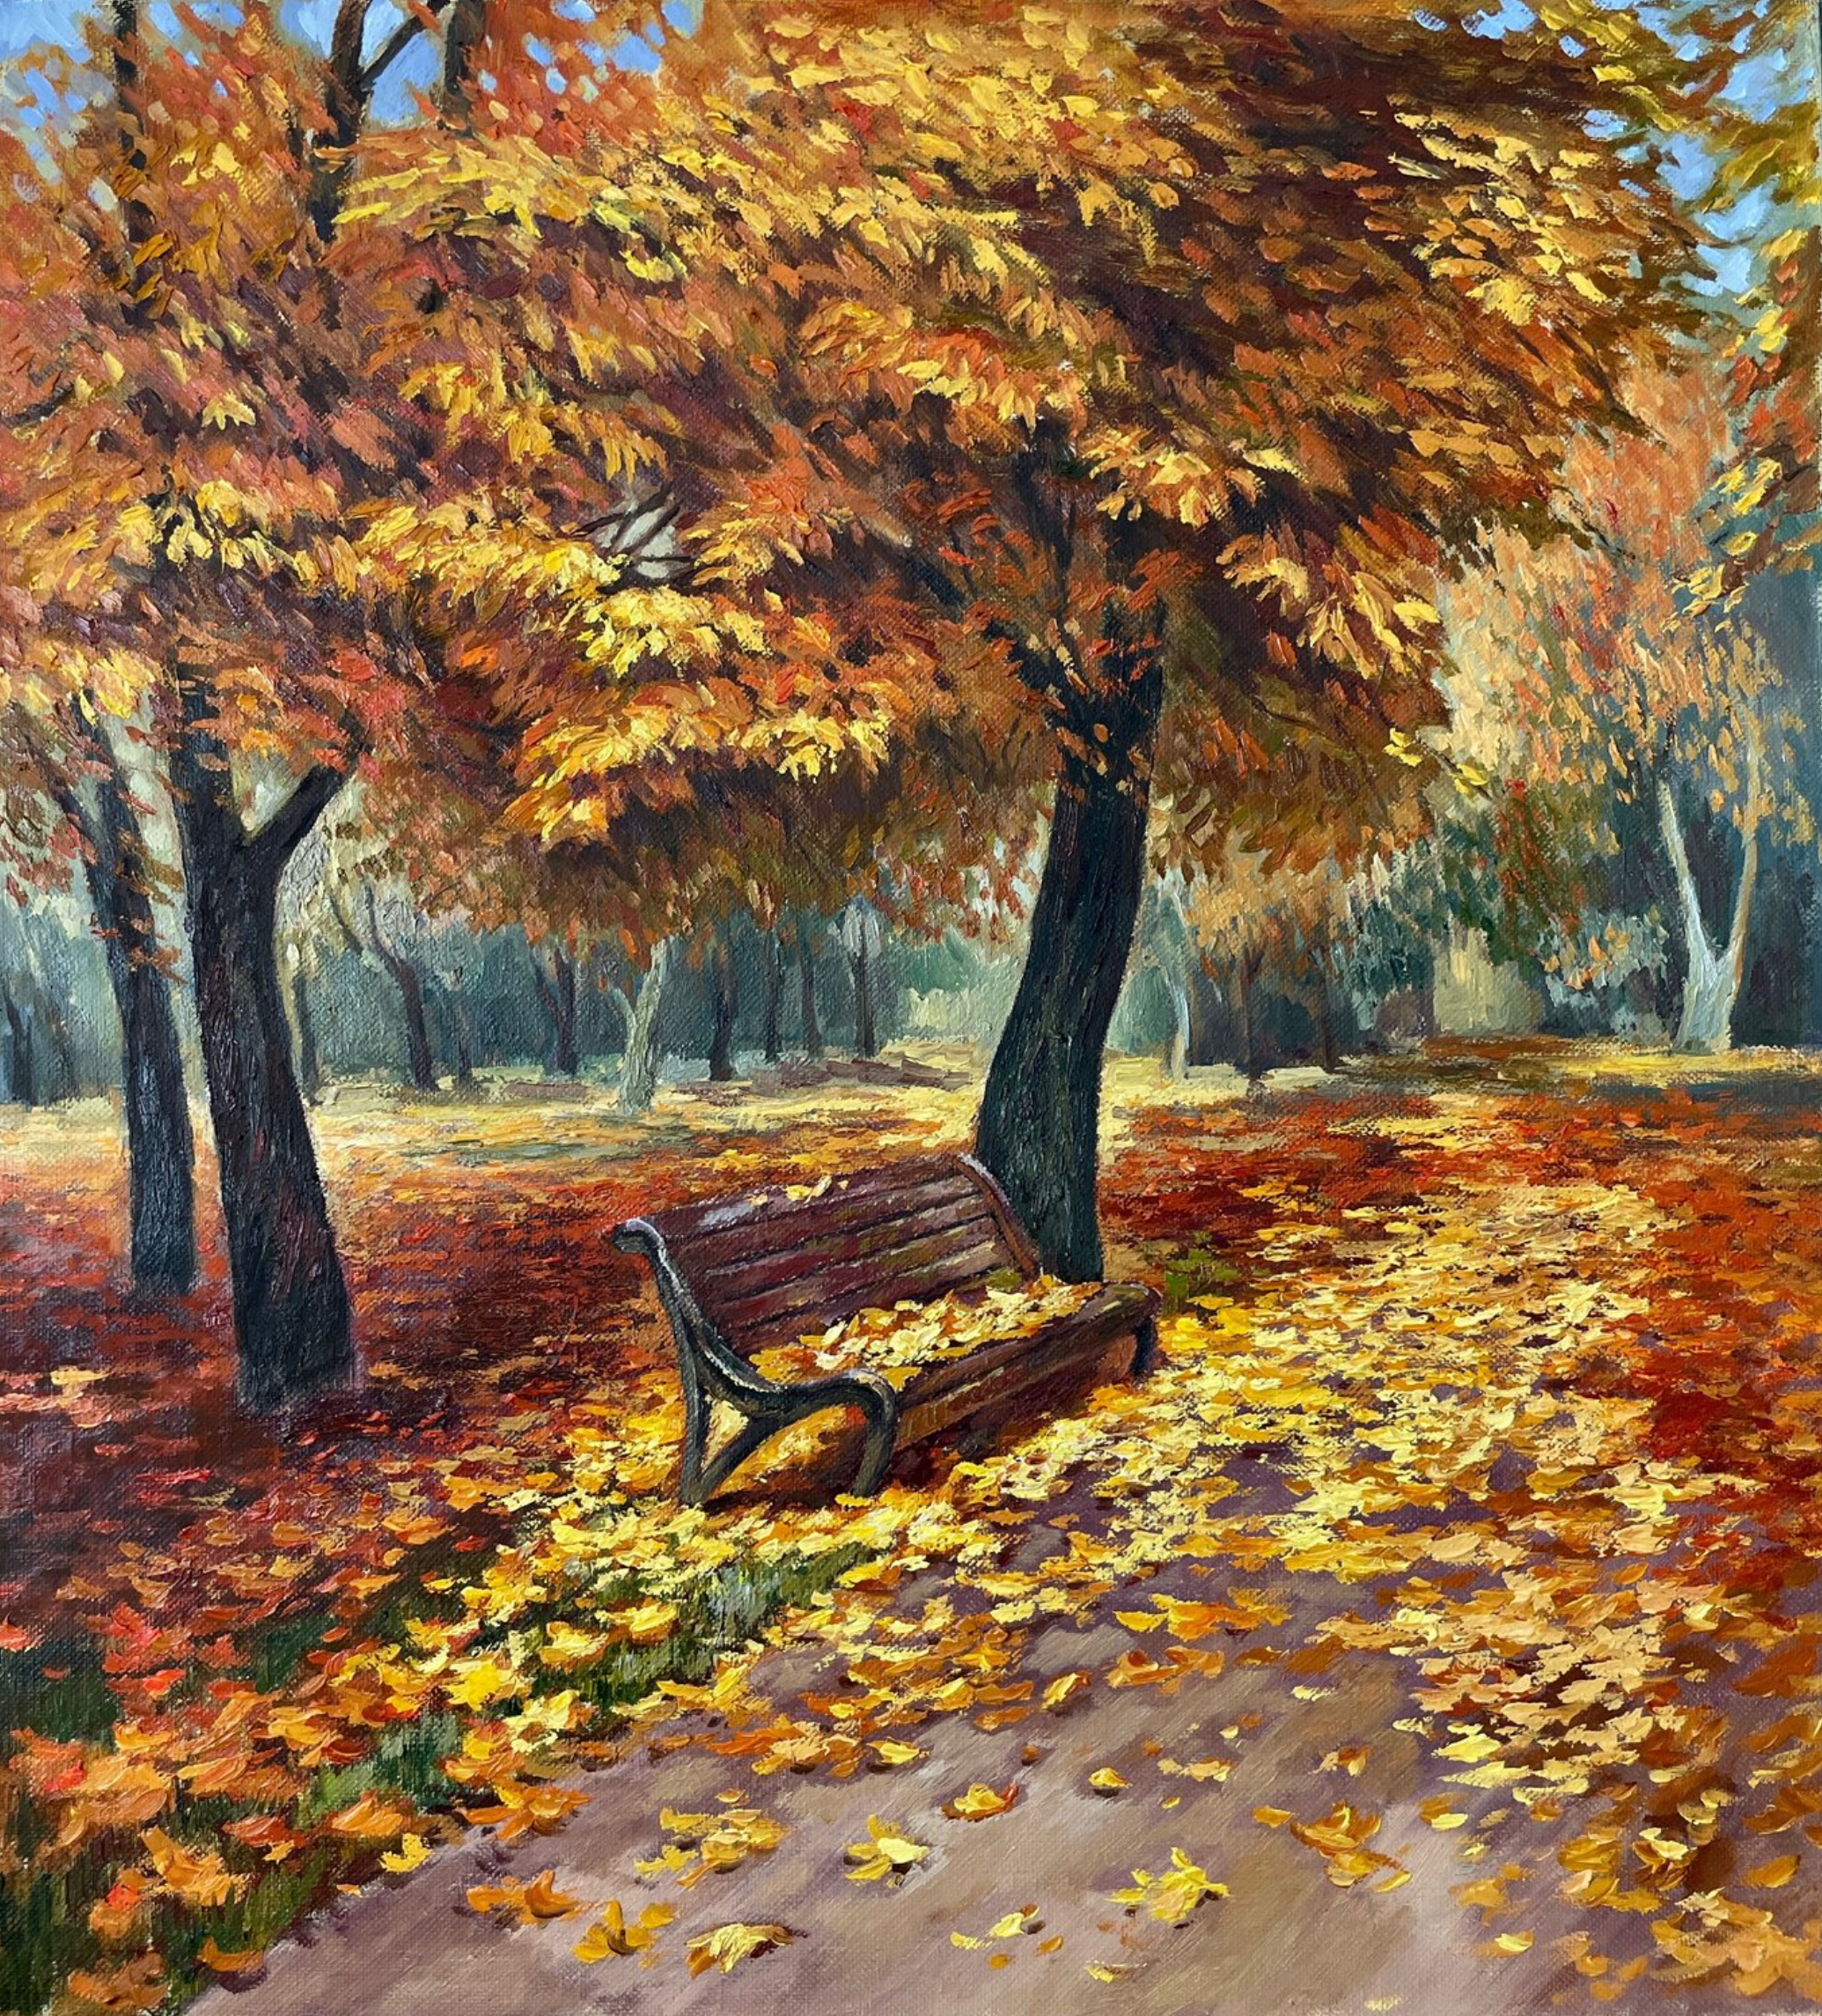 Il dipinto "Leaf Fall" di Anna Reznikova mostra un bellissimo paesaggio autunnale. Una panchina del parco con foglie autunnali dai meravigliosi colori marrone, giallo e rosso. Dipinto con pennelli su tela di cotone.